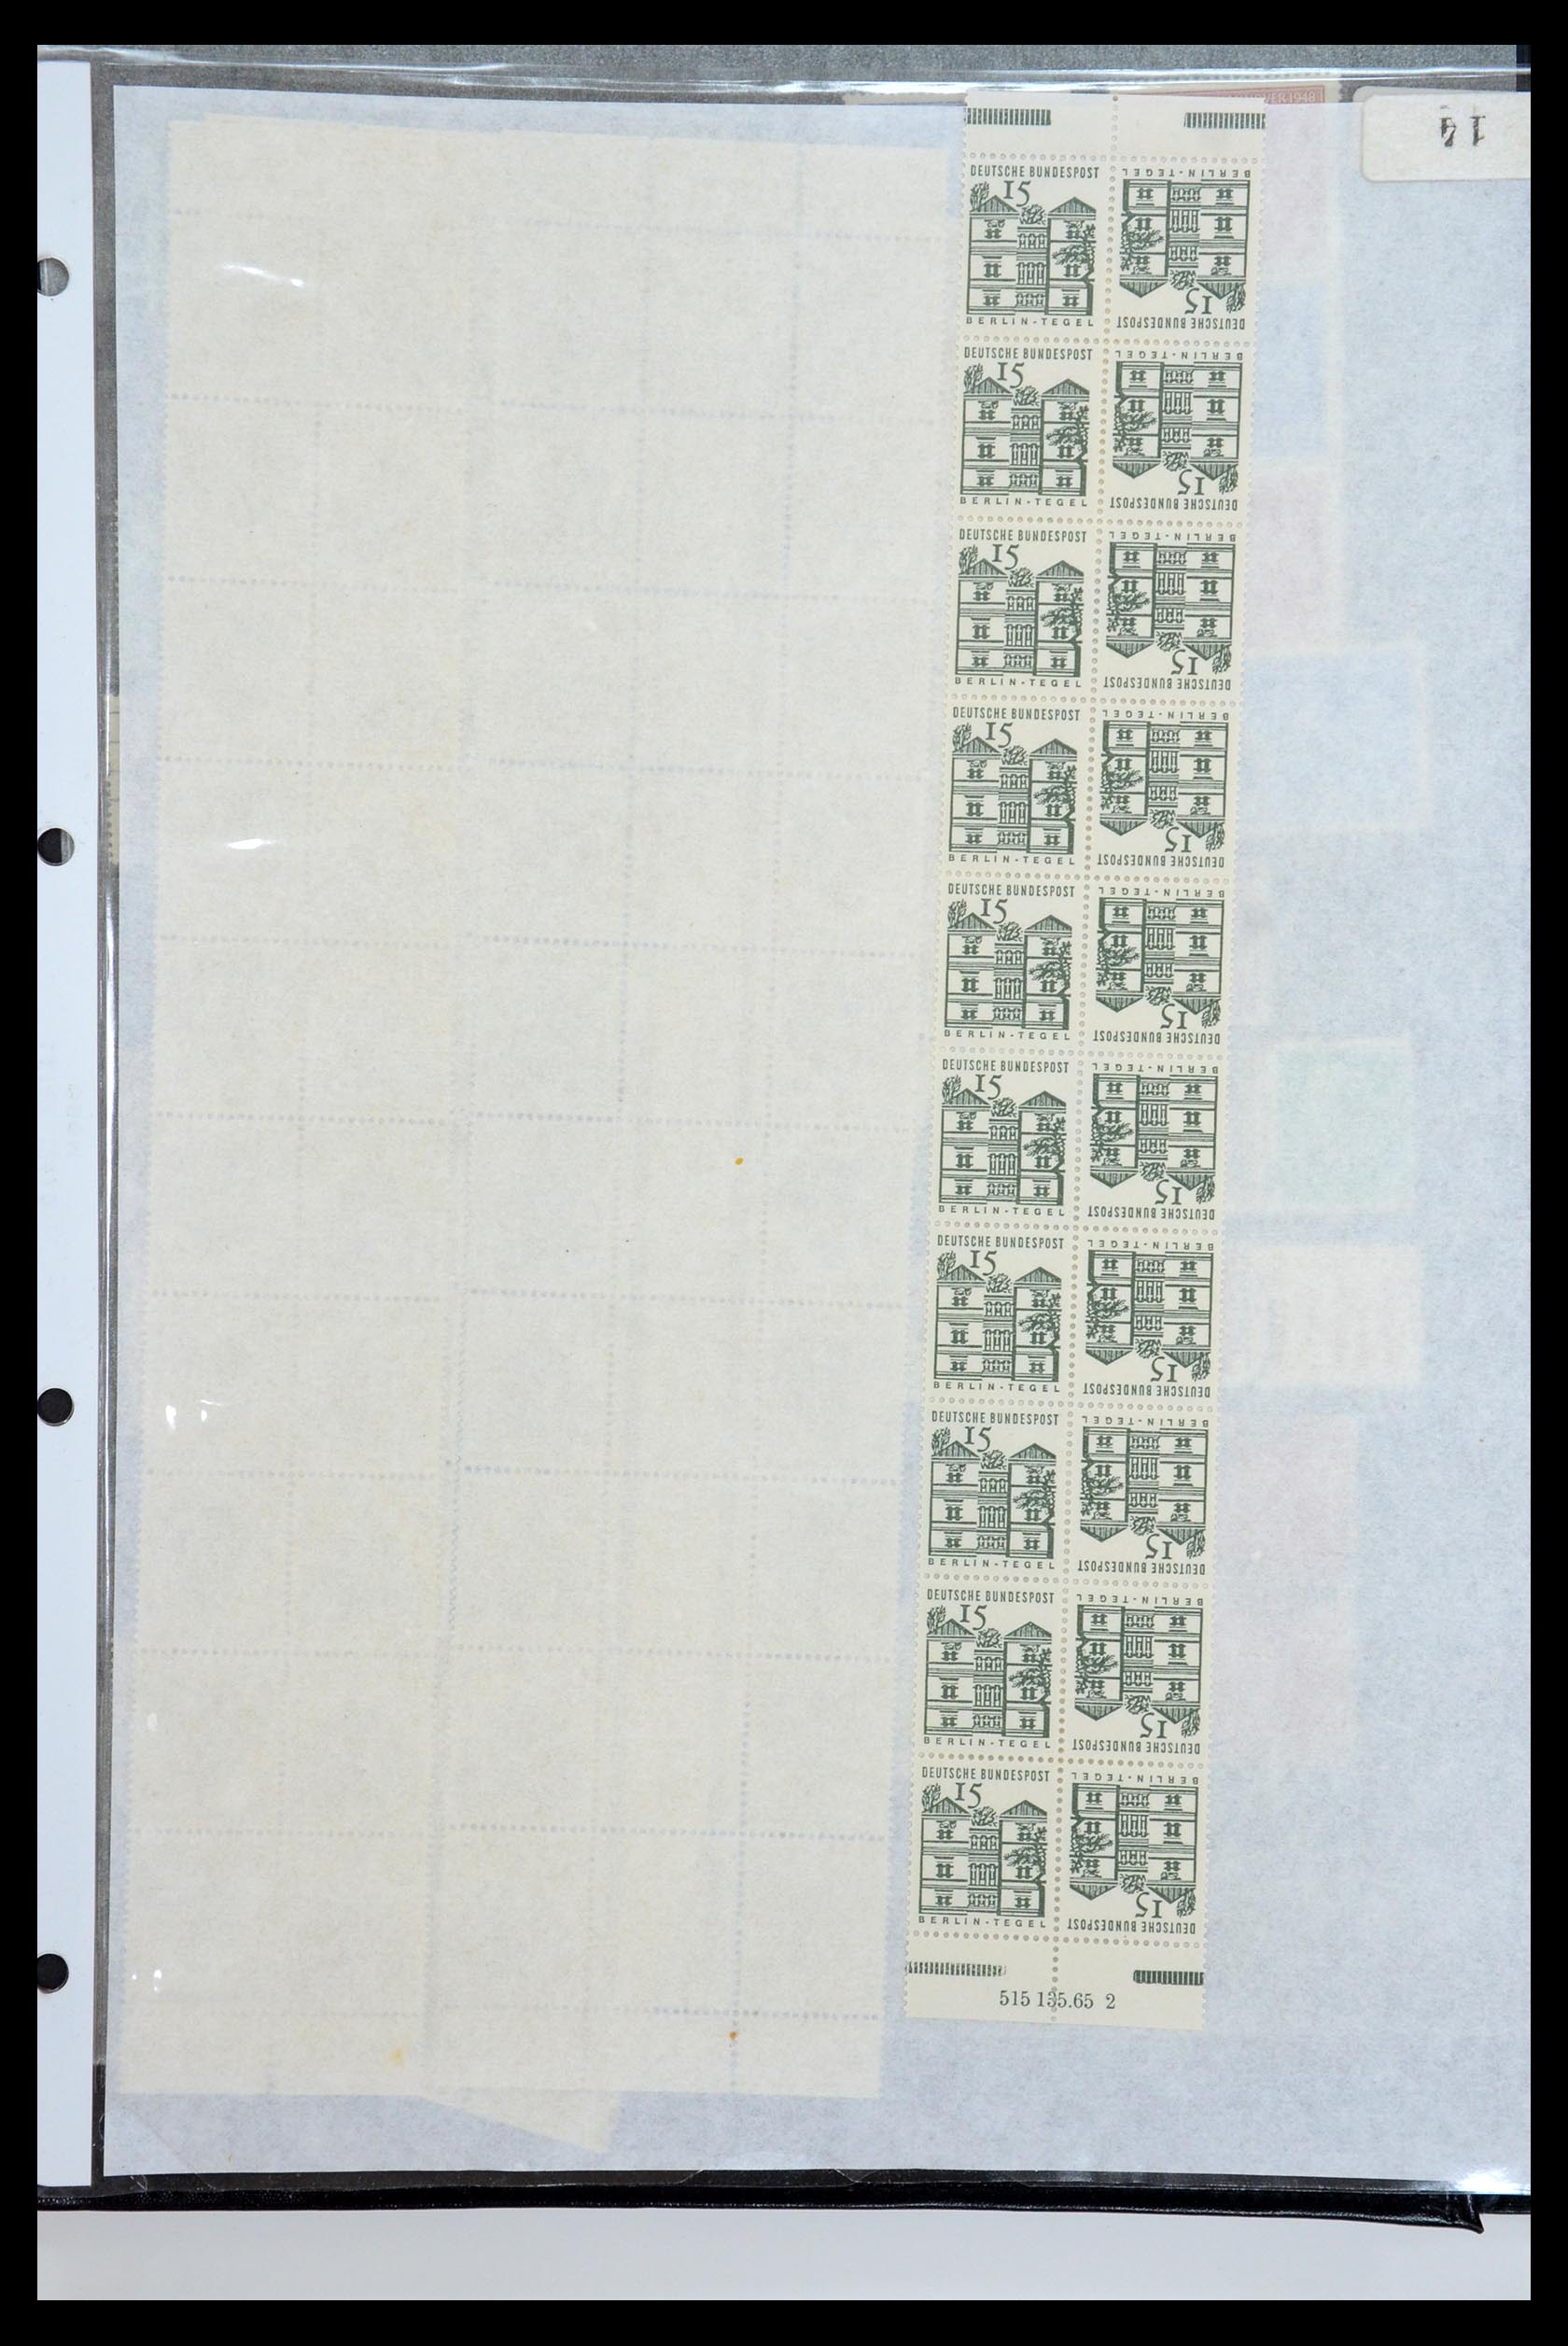 35729 060 - Postzegelverzameling 35729 Duitsland combinaties 1920-1980.